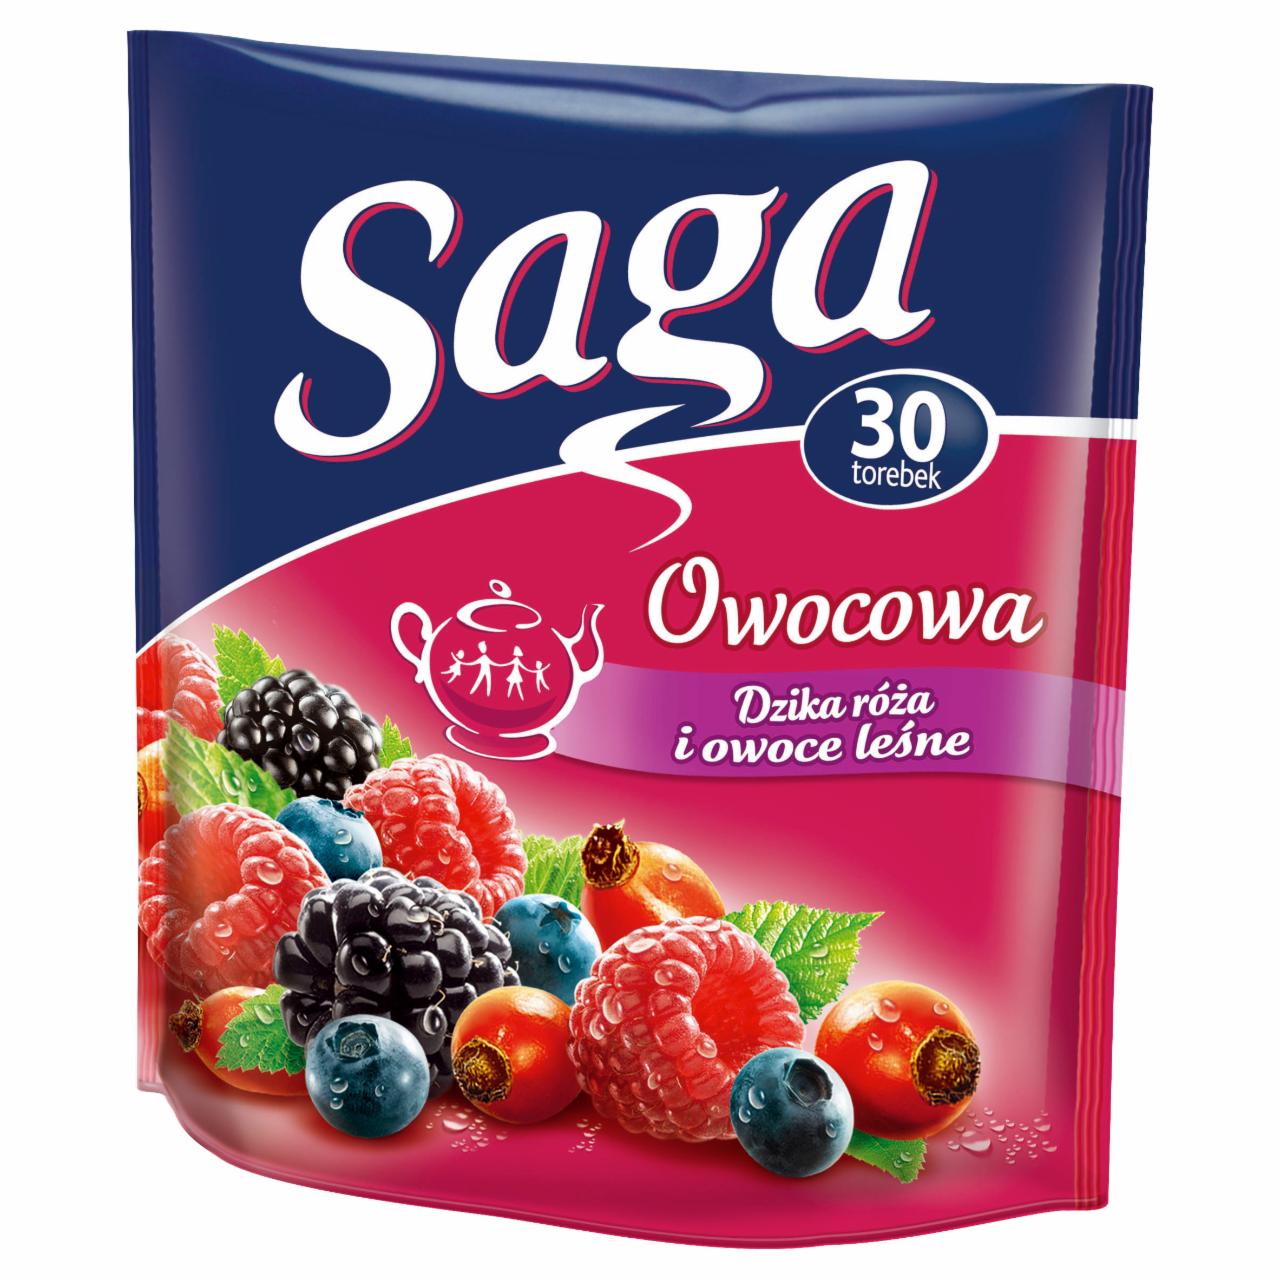 Zdjęcia - Saga Owocowa dzika róża i owoce leśne Herbatka 60 g (30 torebek)